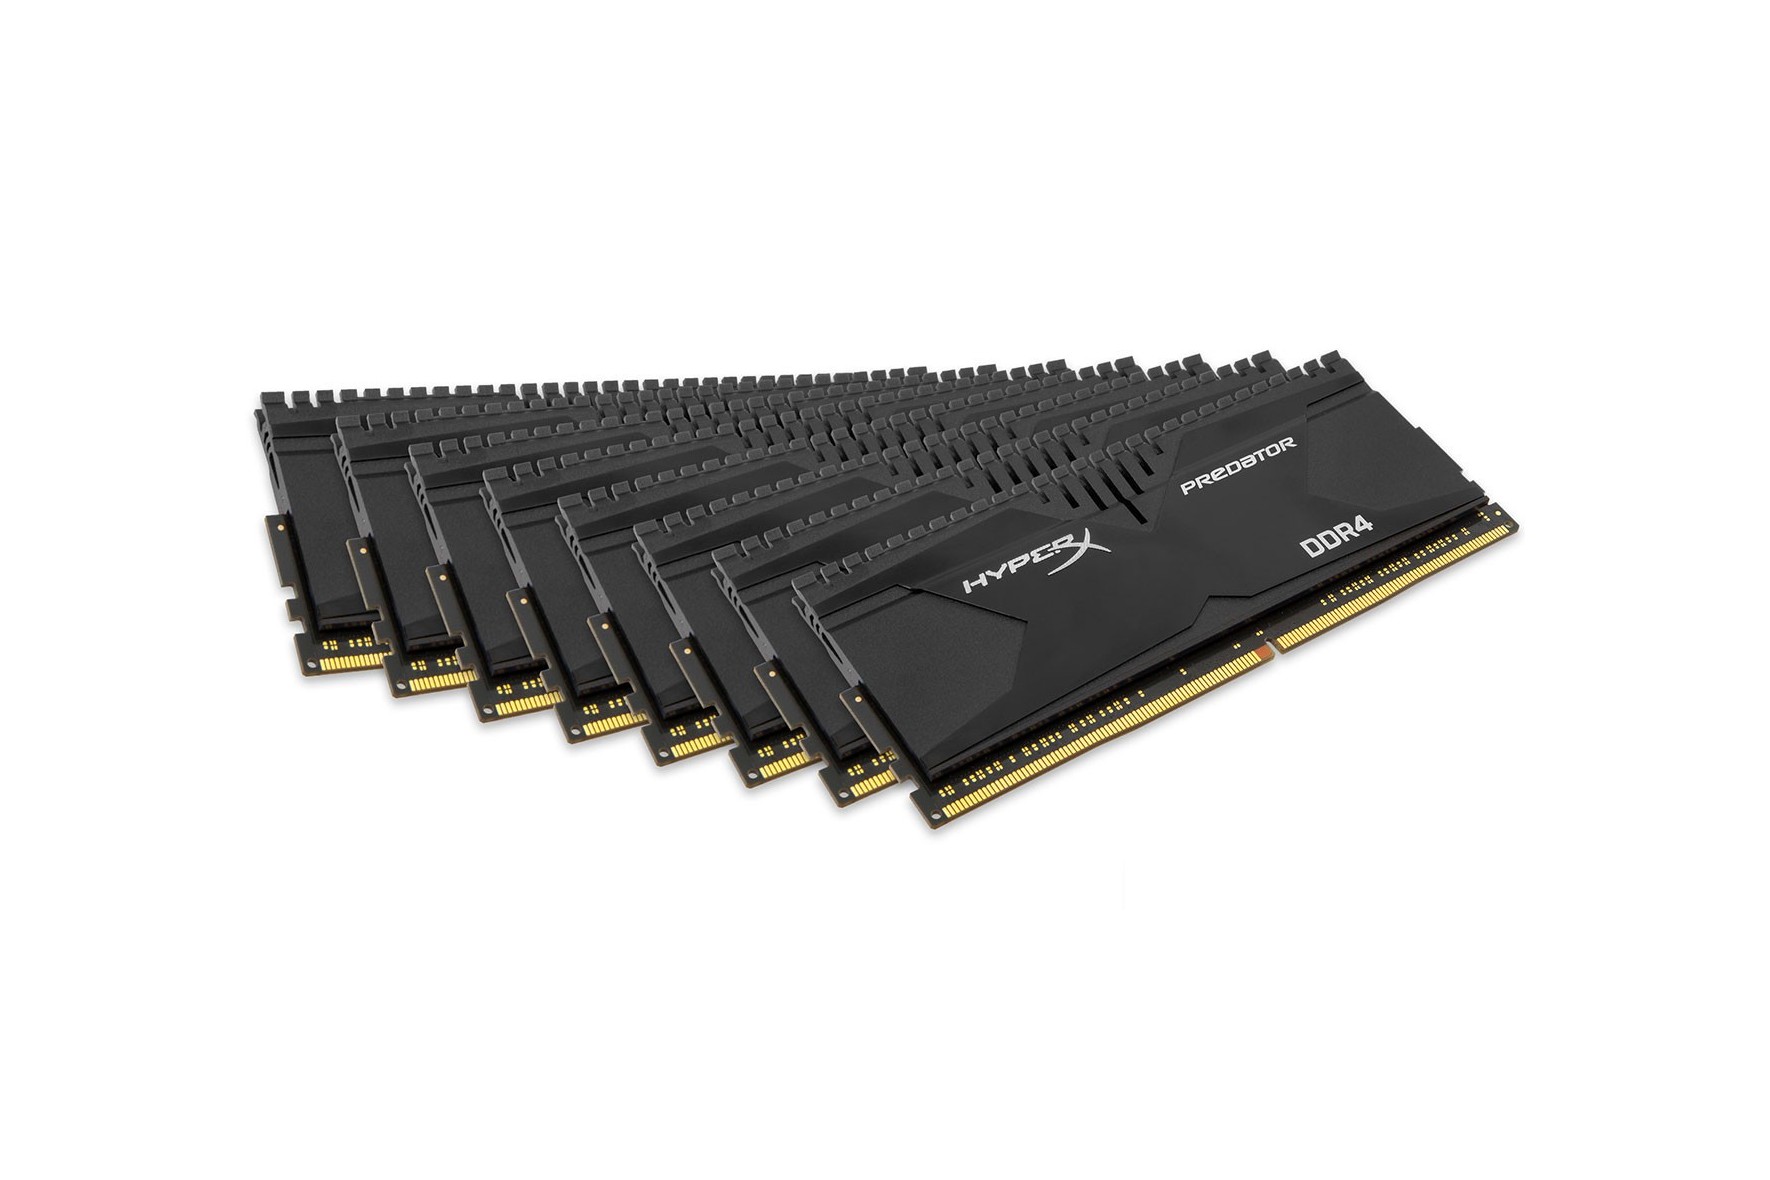 Ddr4 Kingston HYPERX Predator 64 GB Ram Kit (16x4) 2800mhz. Оперативная память 8 ГБ 8 шт. HYPERX hx428c14pbk8/64. 64 гб оперативной памяти цена